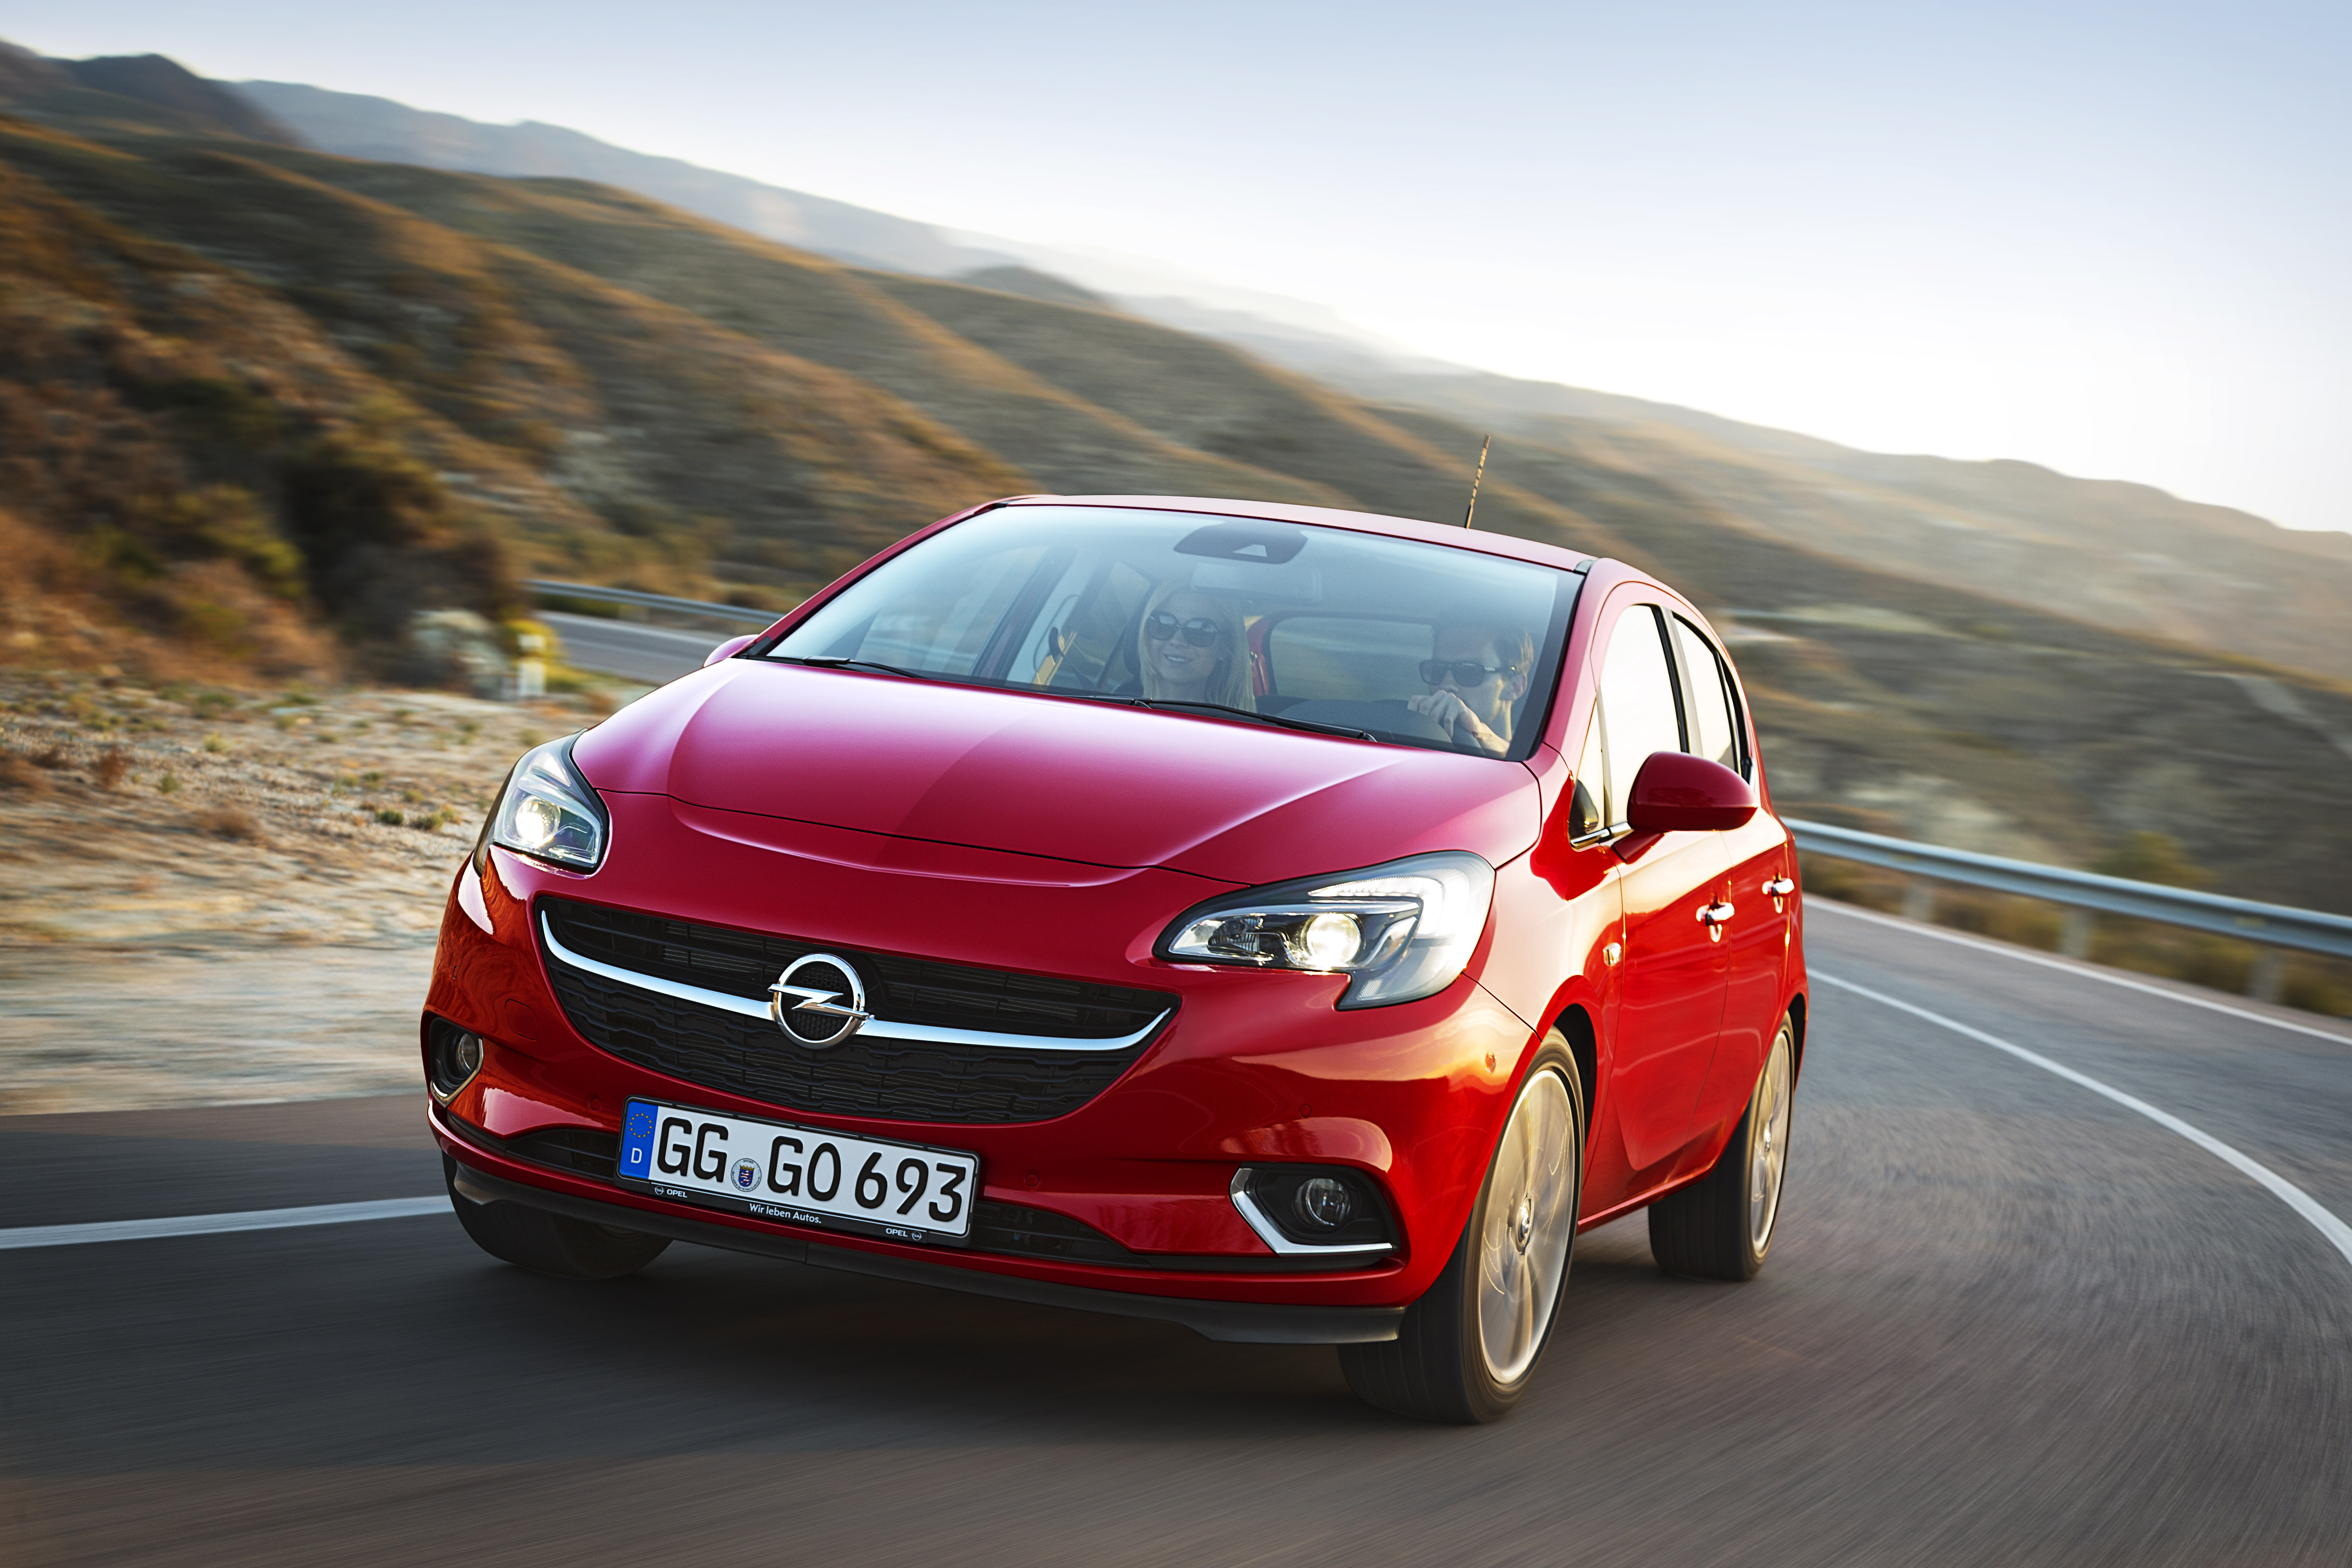 2015 Opel Corsa 1 3 CDTI ecoFLEX Turbo Diesel Drinks Only 3 1 Liters of Fuel Every 100 Km 